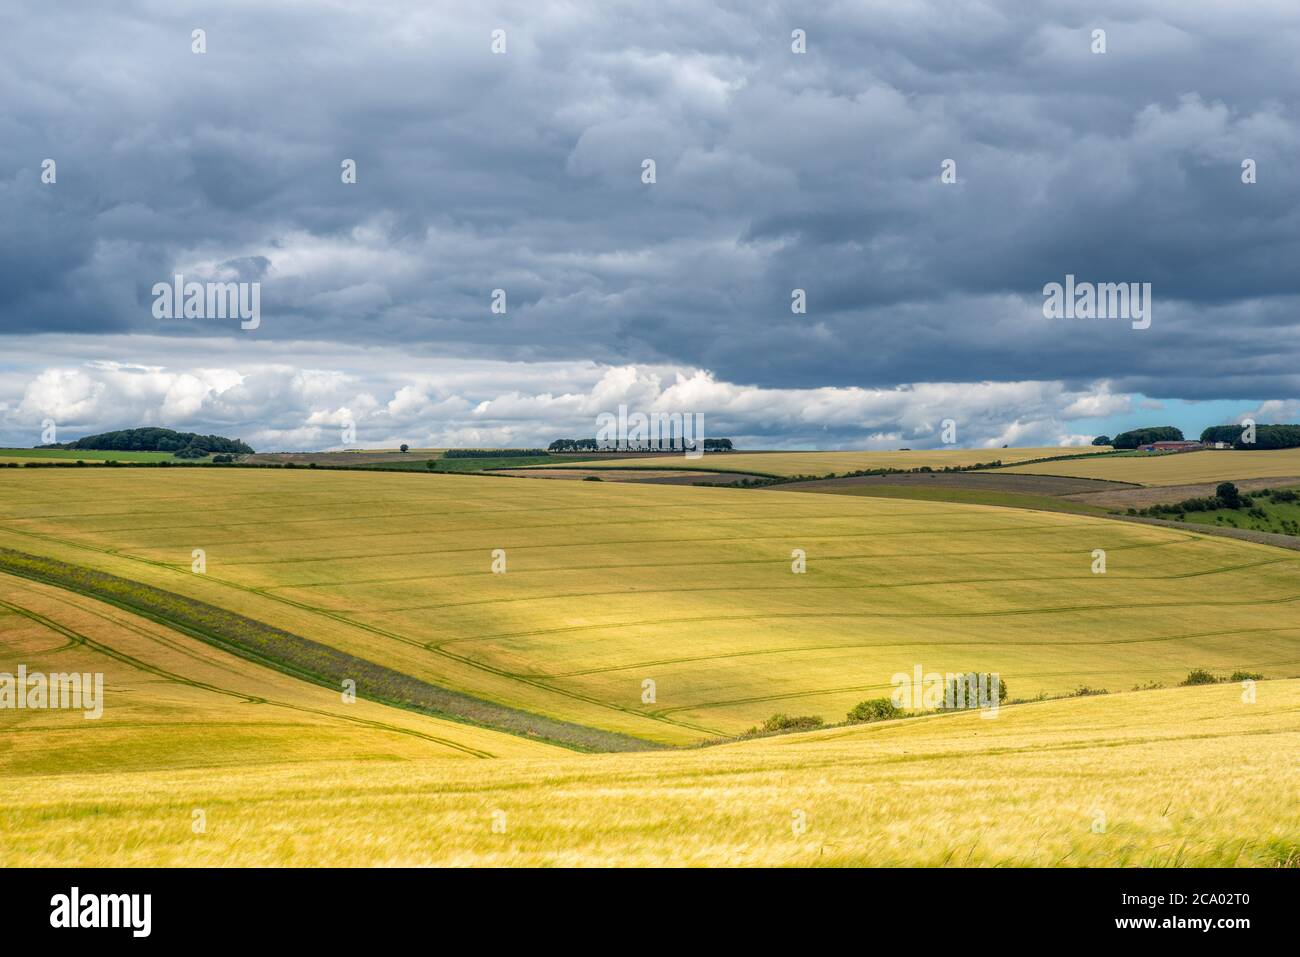 Vista de paisaje colorido sobre colinas onduladas y campos de trigo en un día soleado con nubes oscuras. Foto de stock